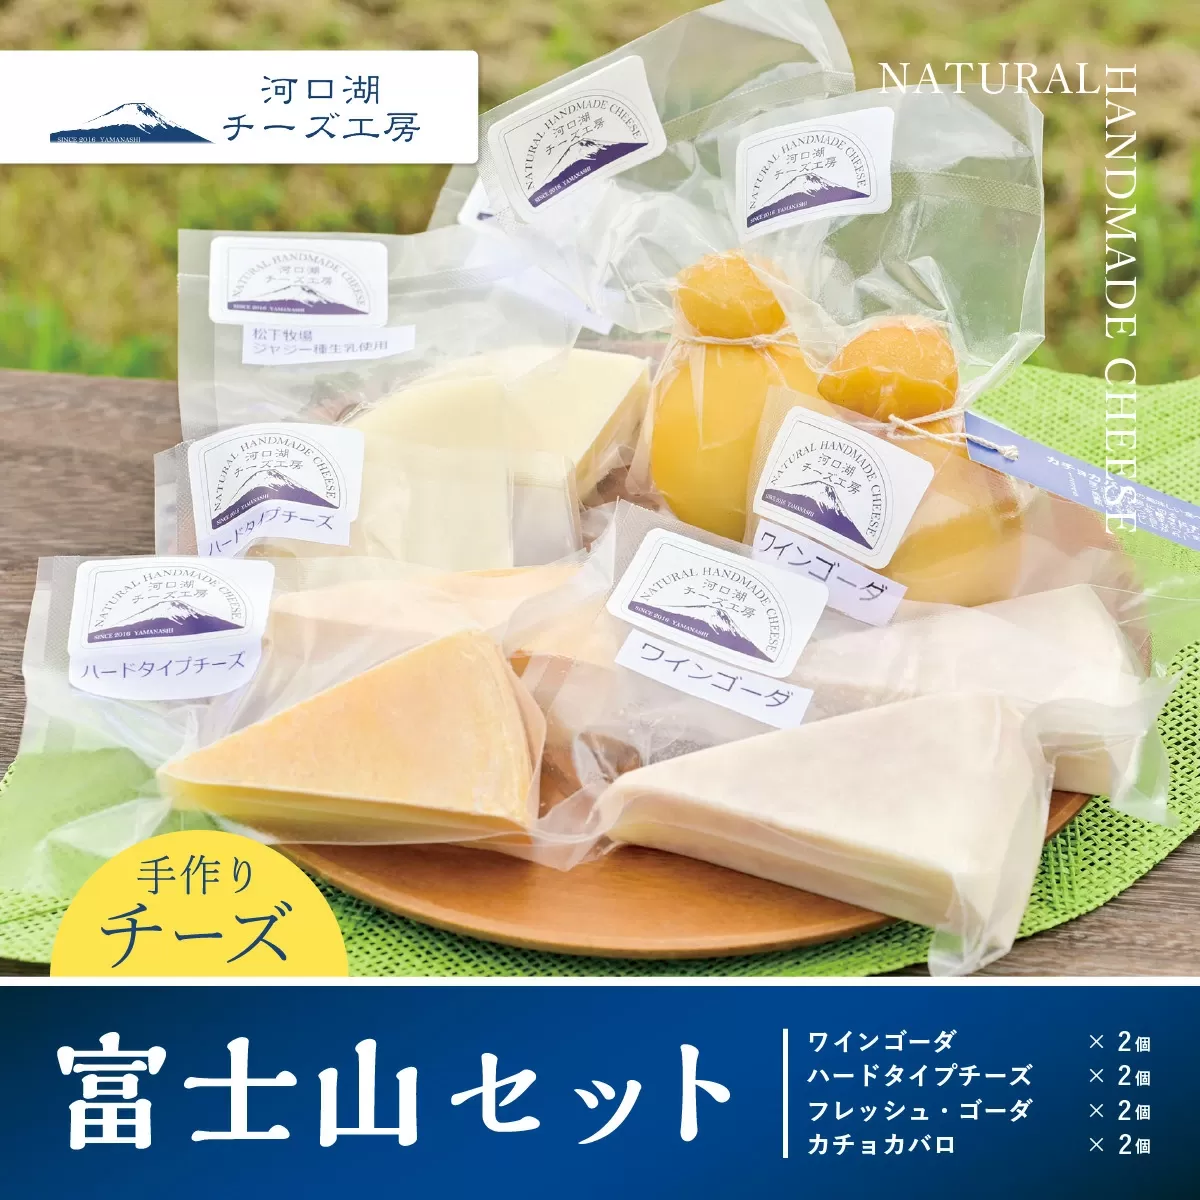 【河口湖チーズ工房】富士山セット FAQ008